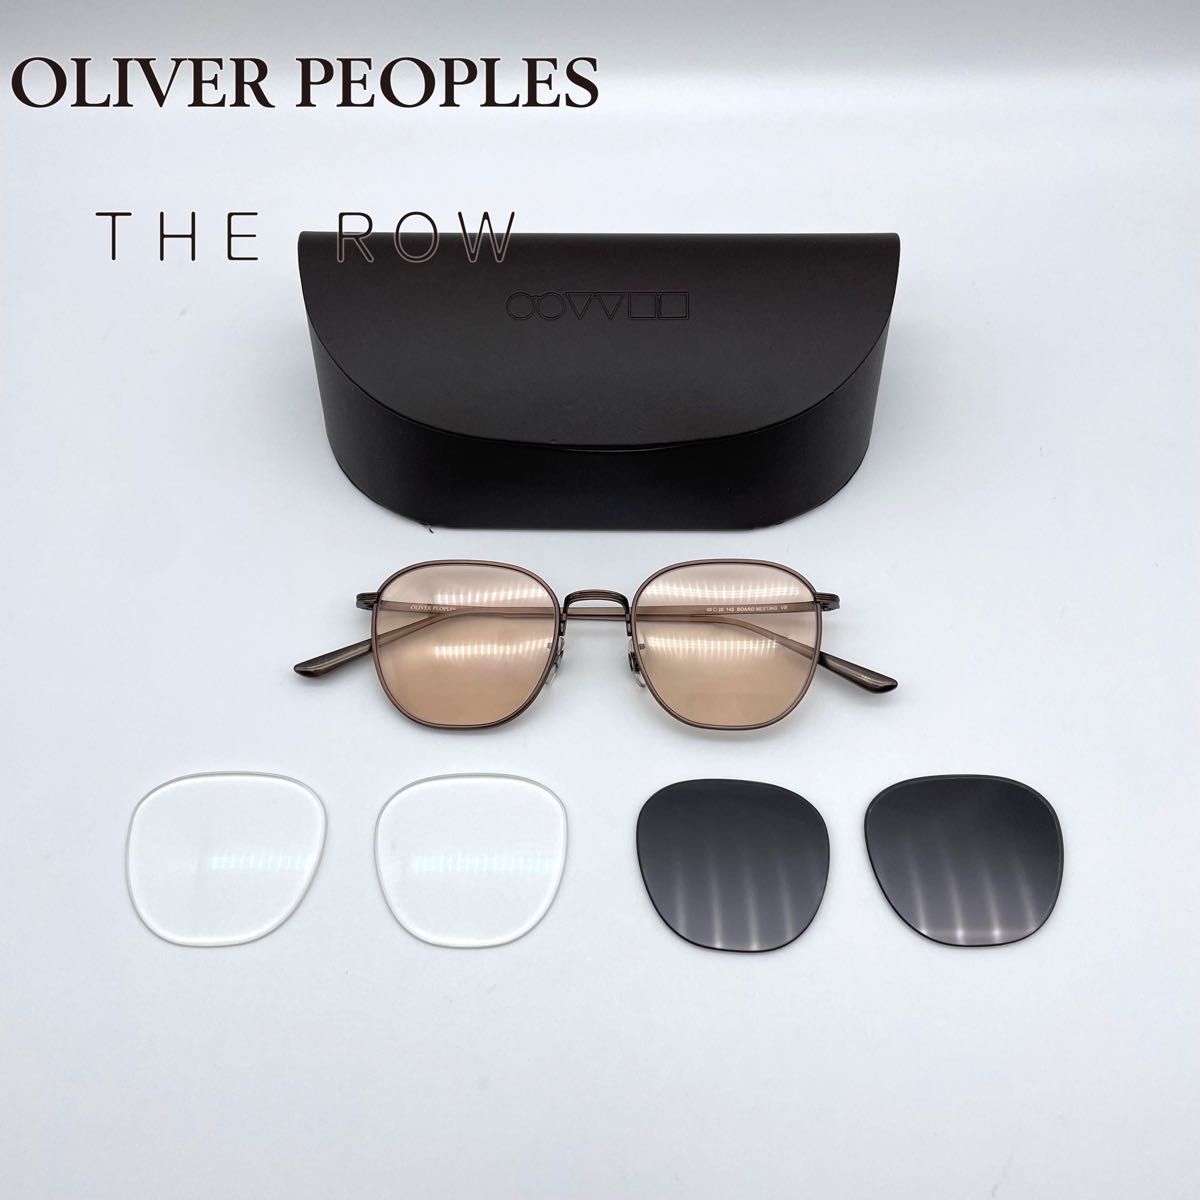 OLIVER PEOPLES × THE ROW コラボ サングラス｜オリバーピープルズ ザロウ｜オルセン姉妹